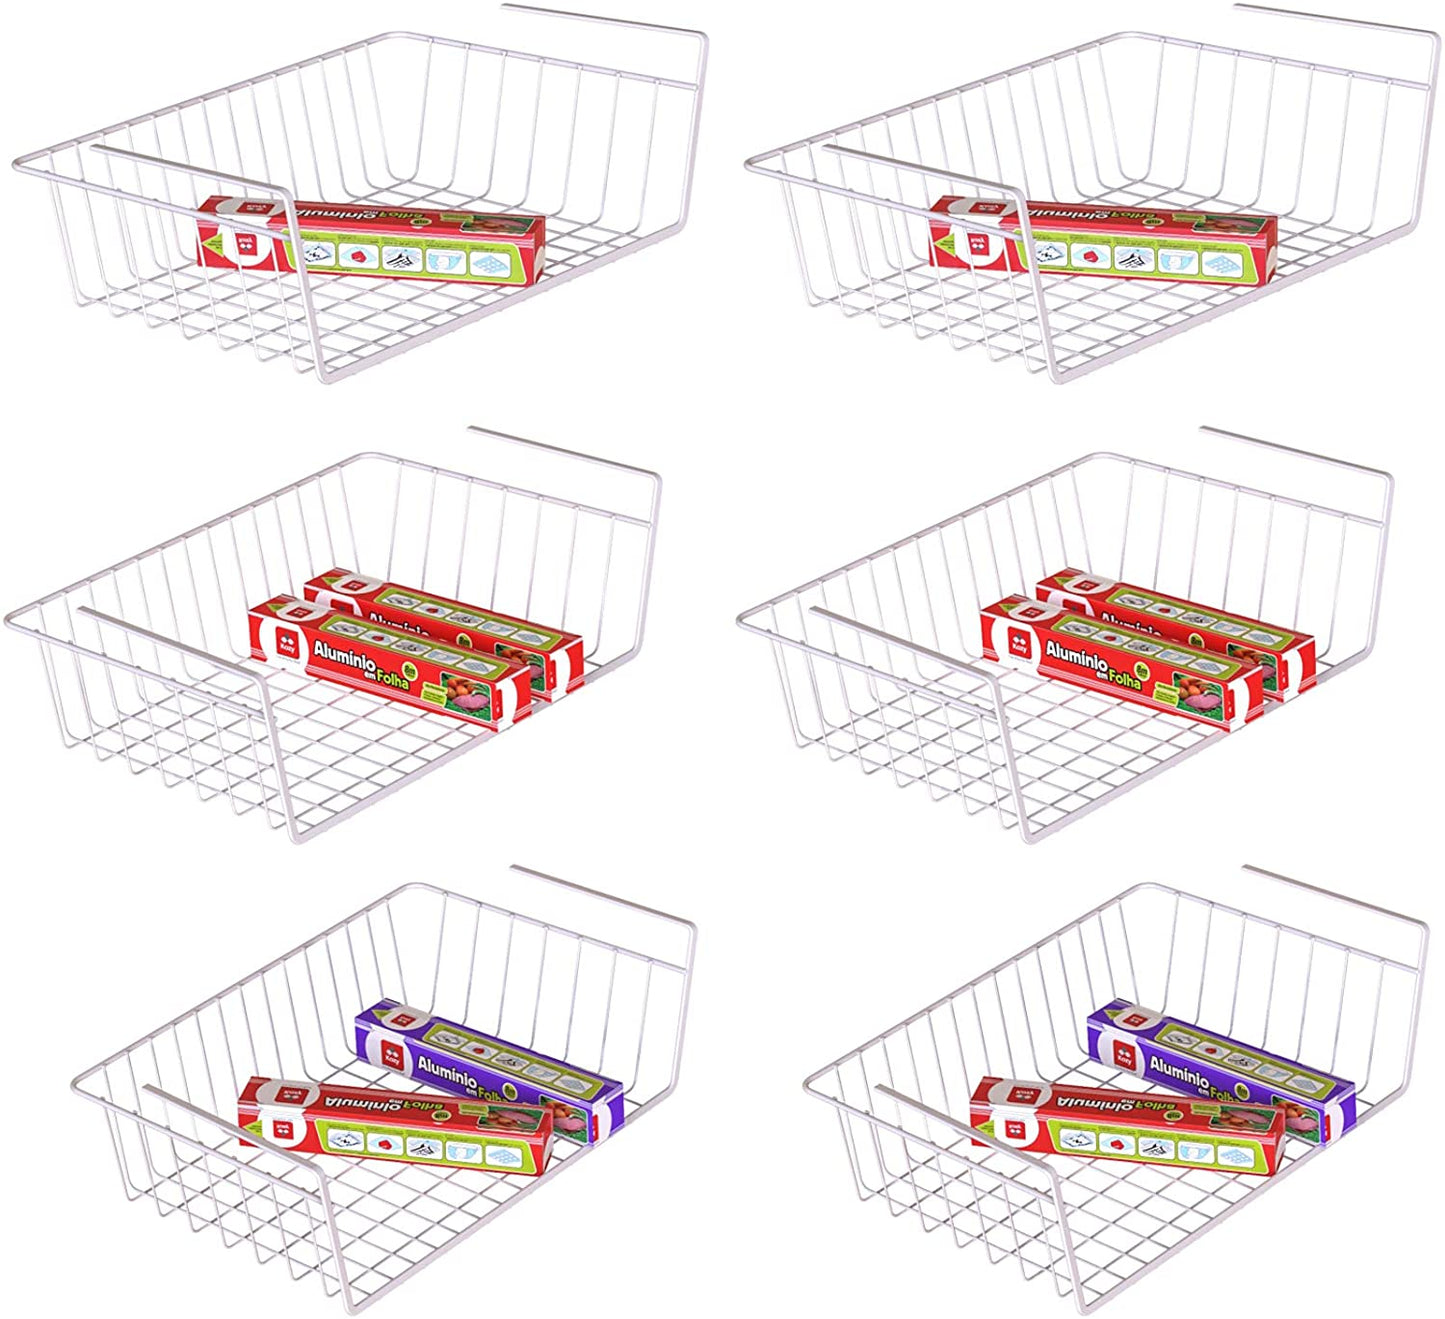 Hanging Under Shelf Storage Basket (4 Pack) - HR024, White